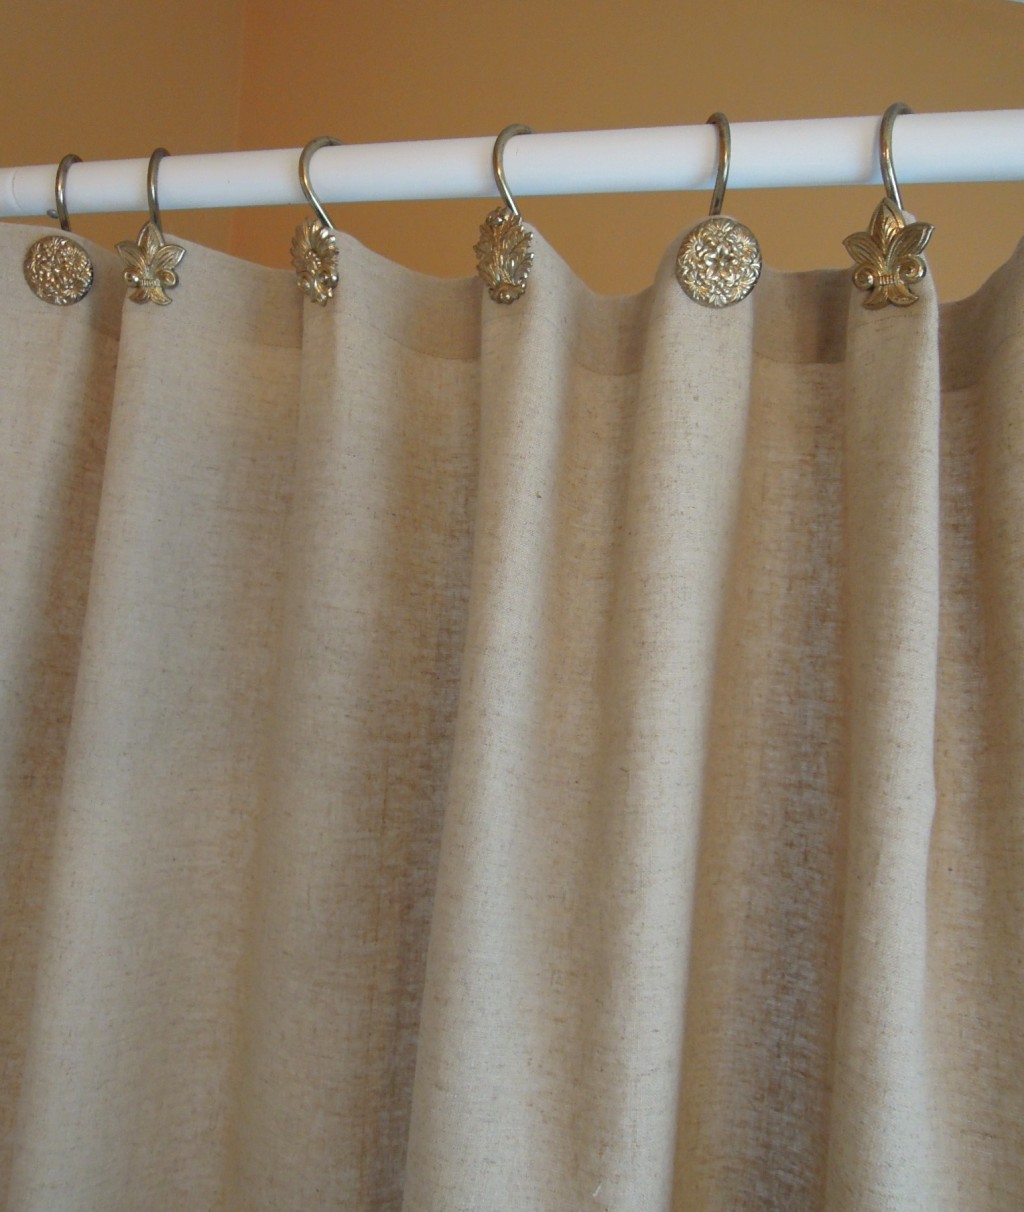 Hemp Shower Curtain in Curtain